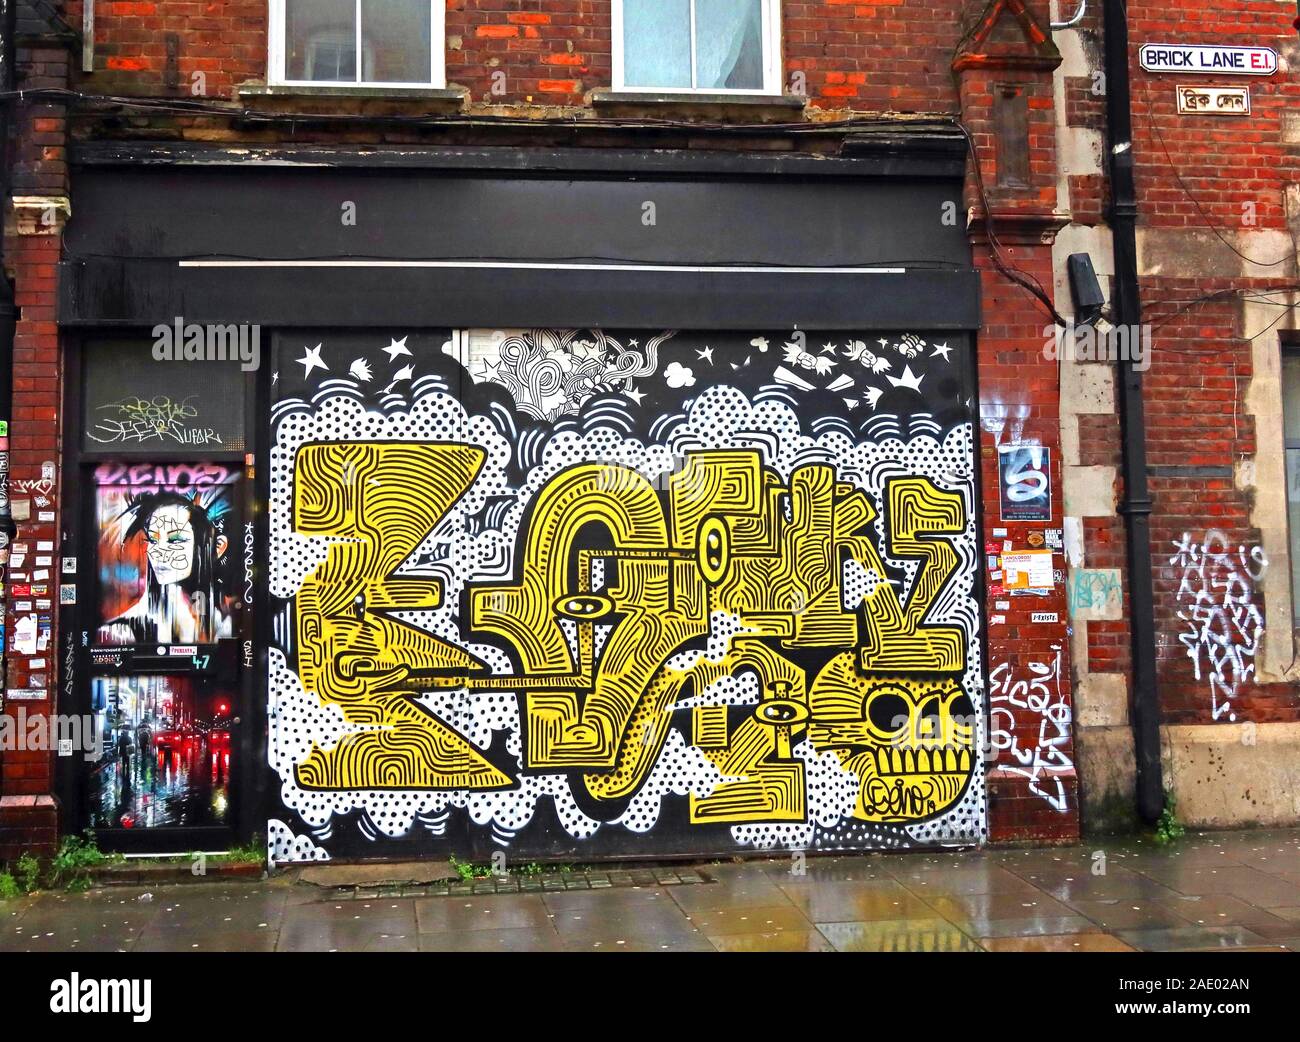 Boutique, Brick Lane, art et graffiti, Shoreditch, Tower Hamlets, East End, Londres, South East, Angleterre, Royaume-Uni, E1 6QL Banque D'Images